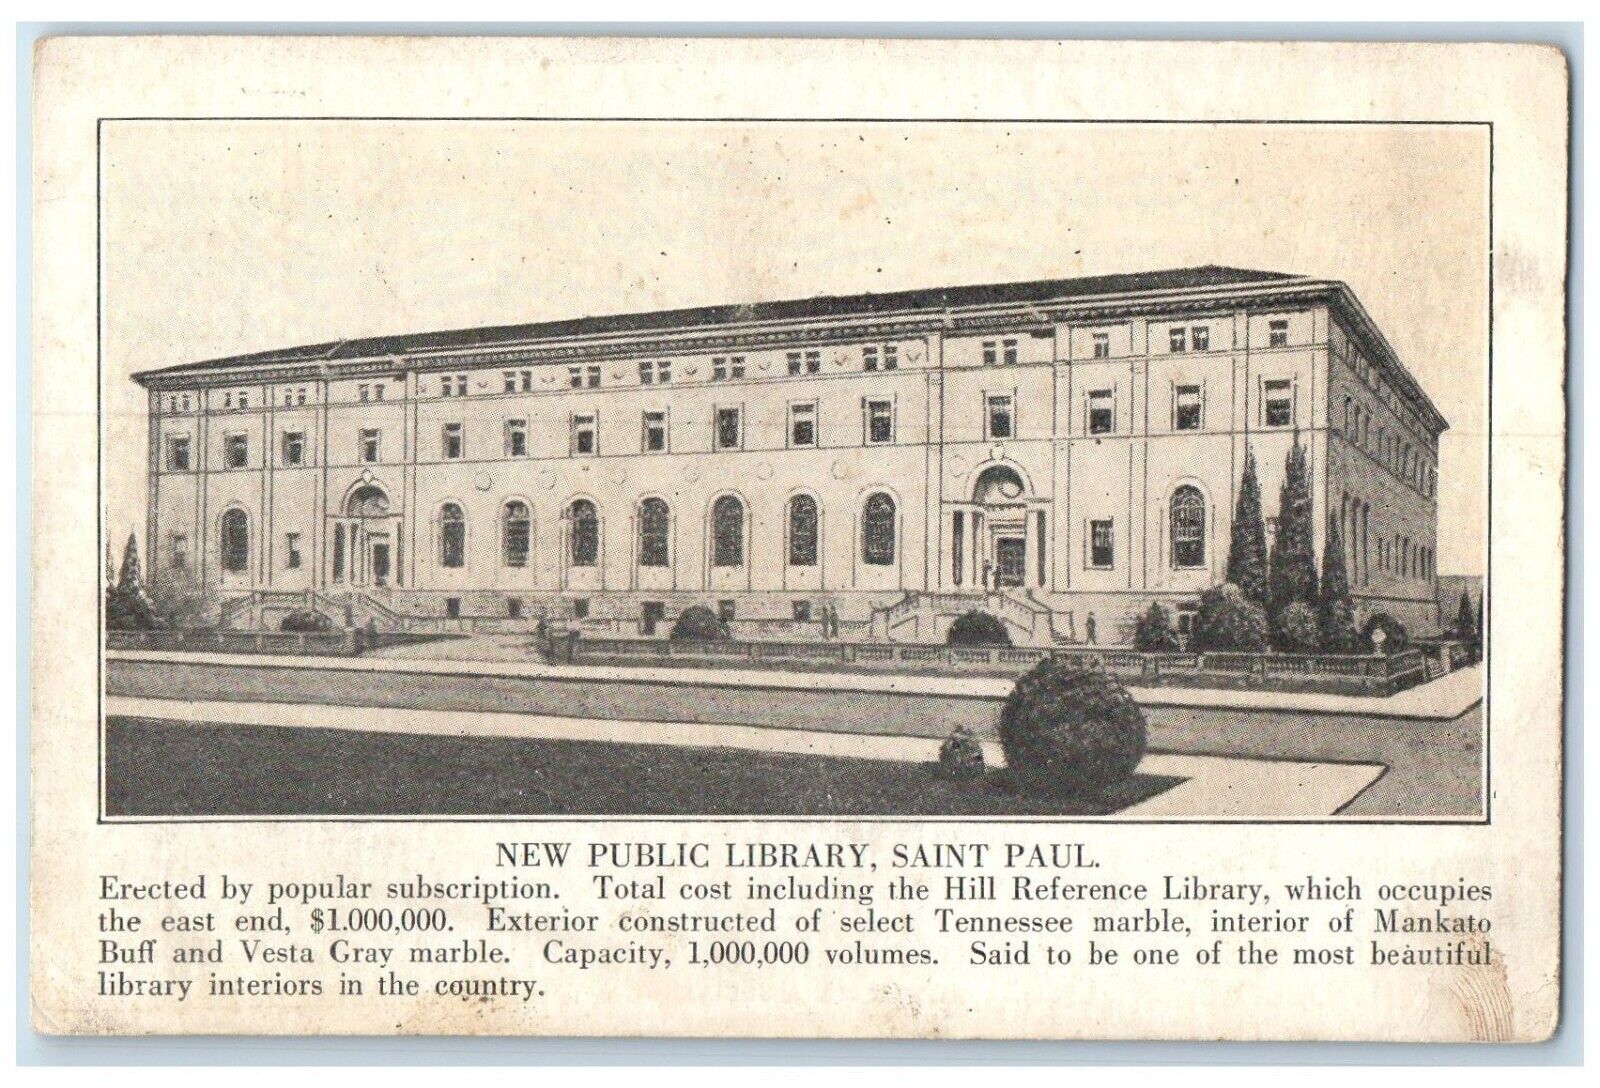 c1940 New Public Library Exterior Building Saint Paul Minnesota Vintage Postcard